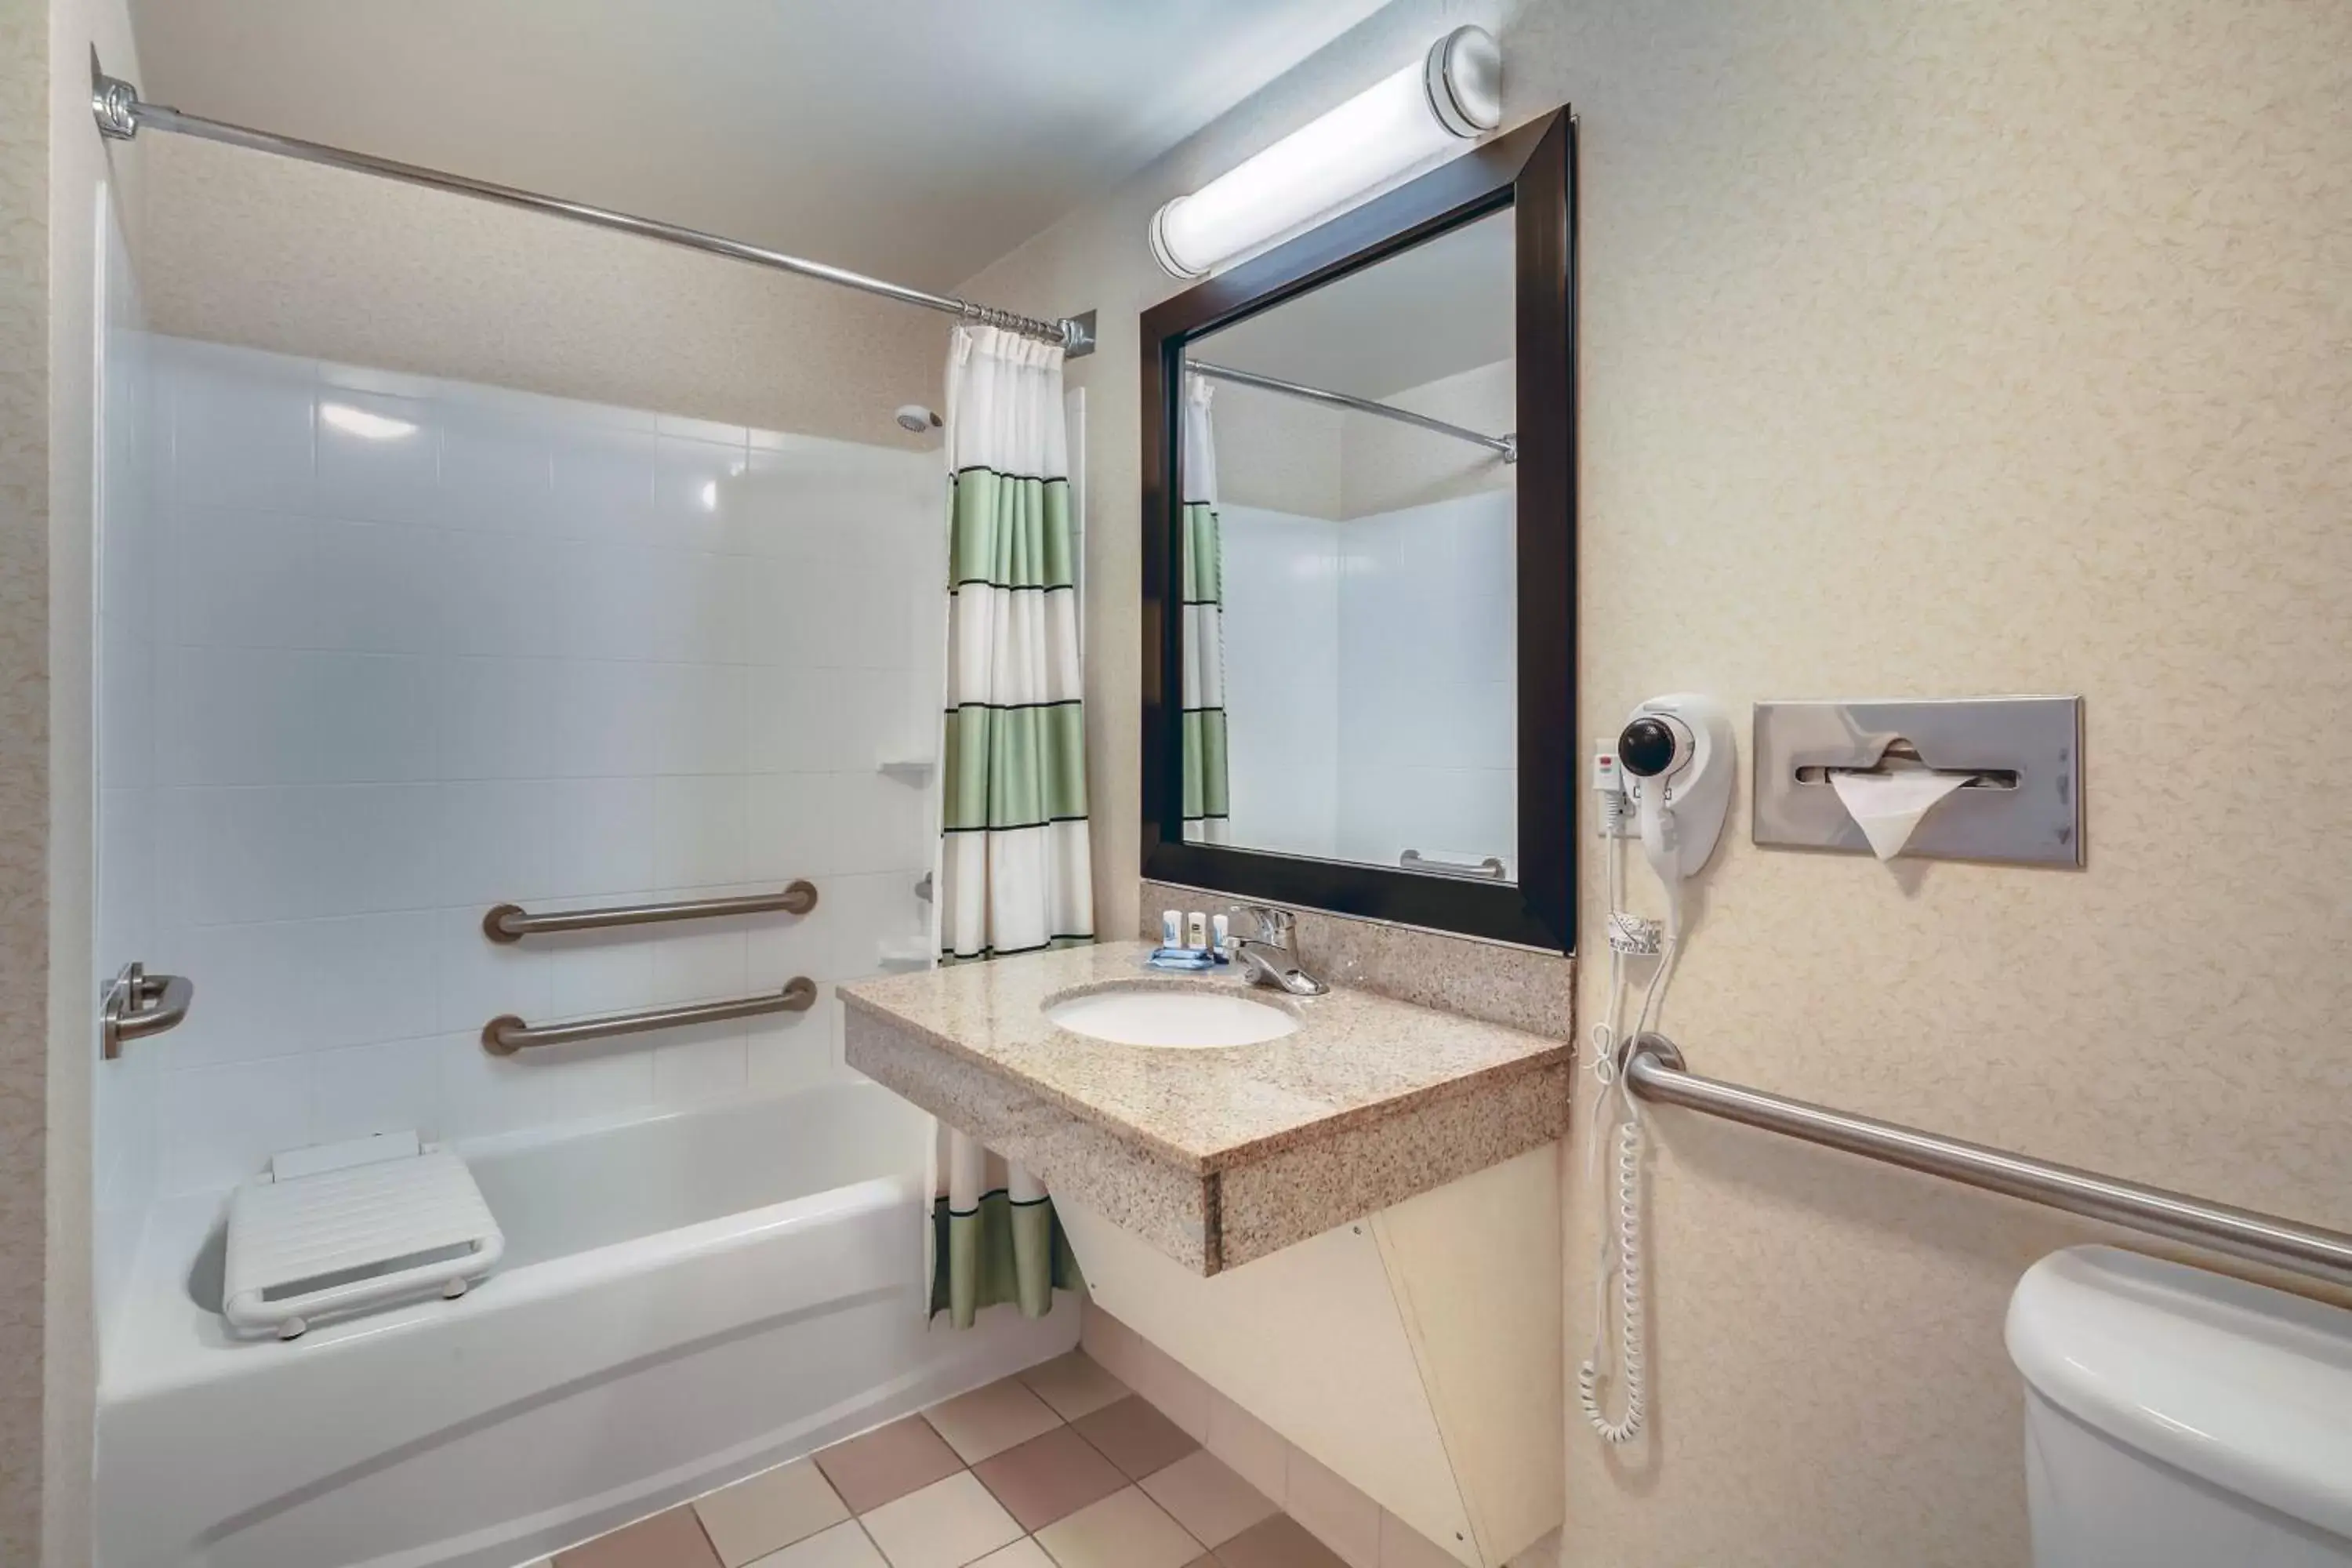 Bathroom in Fairfield Inn and Suites Jacksonville Beach